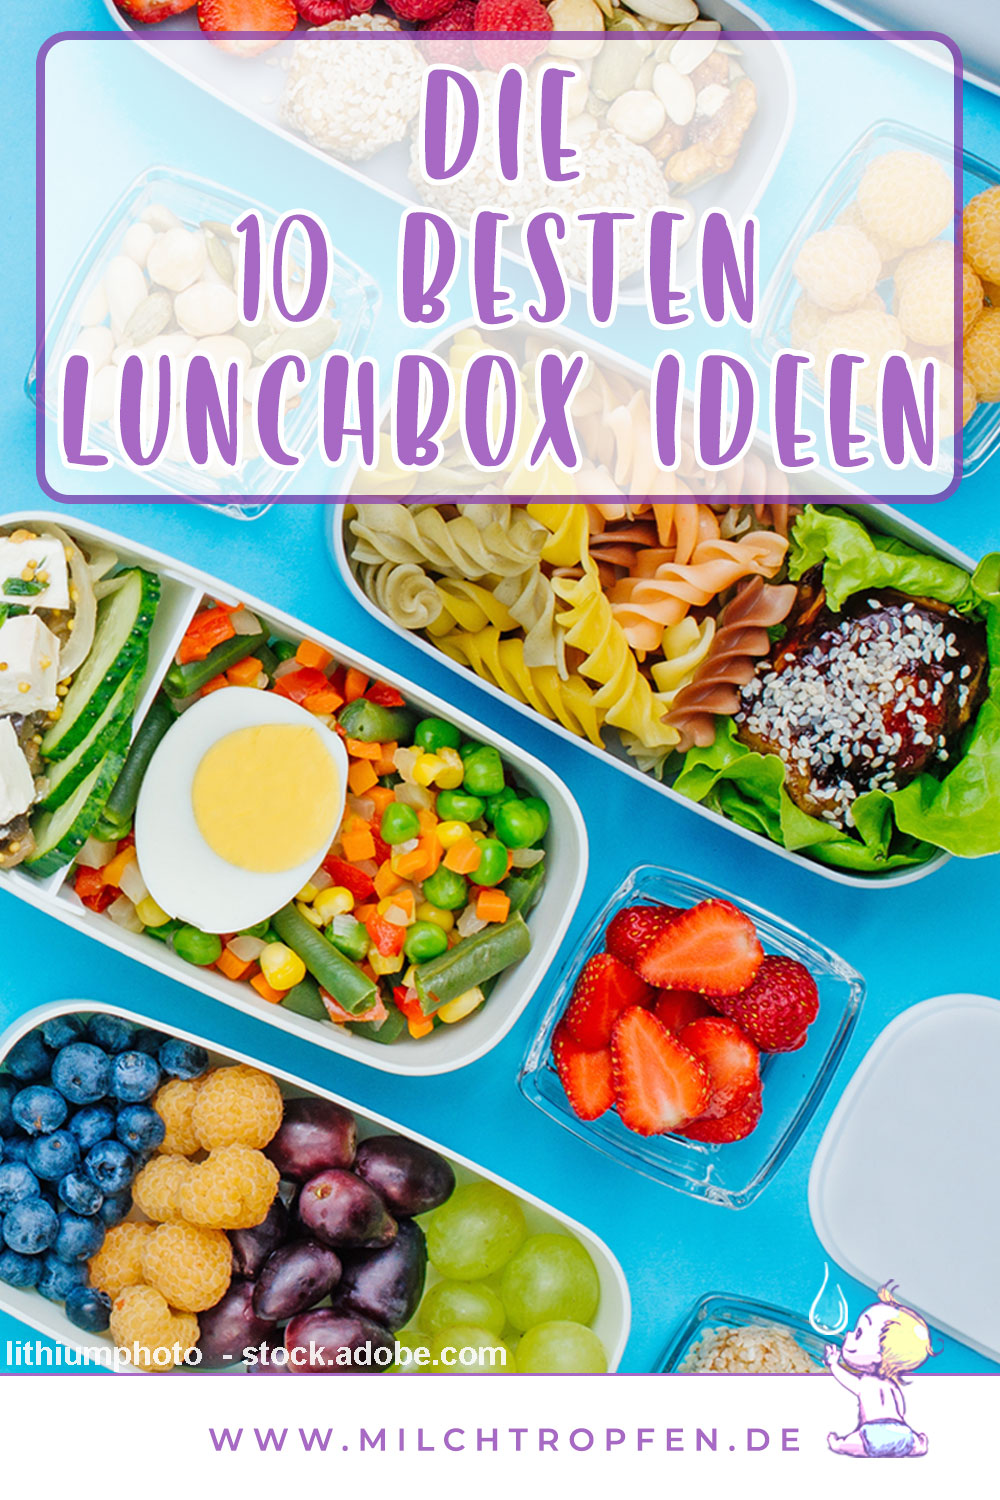 Die 10 besten Lunchbox Ideen